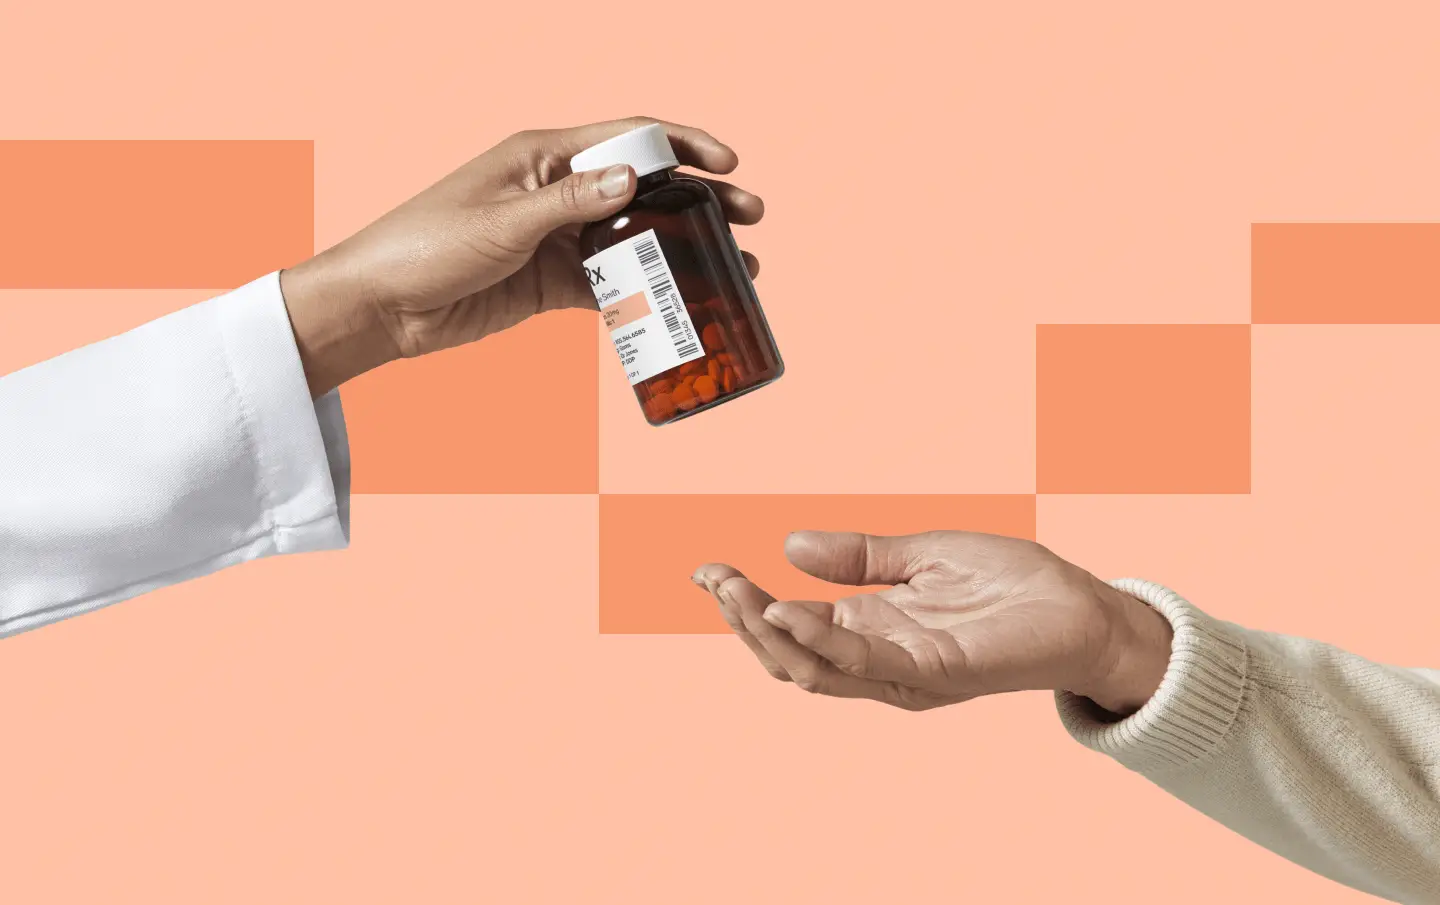 A doctor hands a prescription to a patient